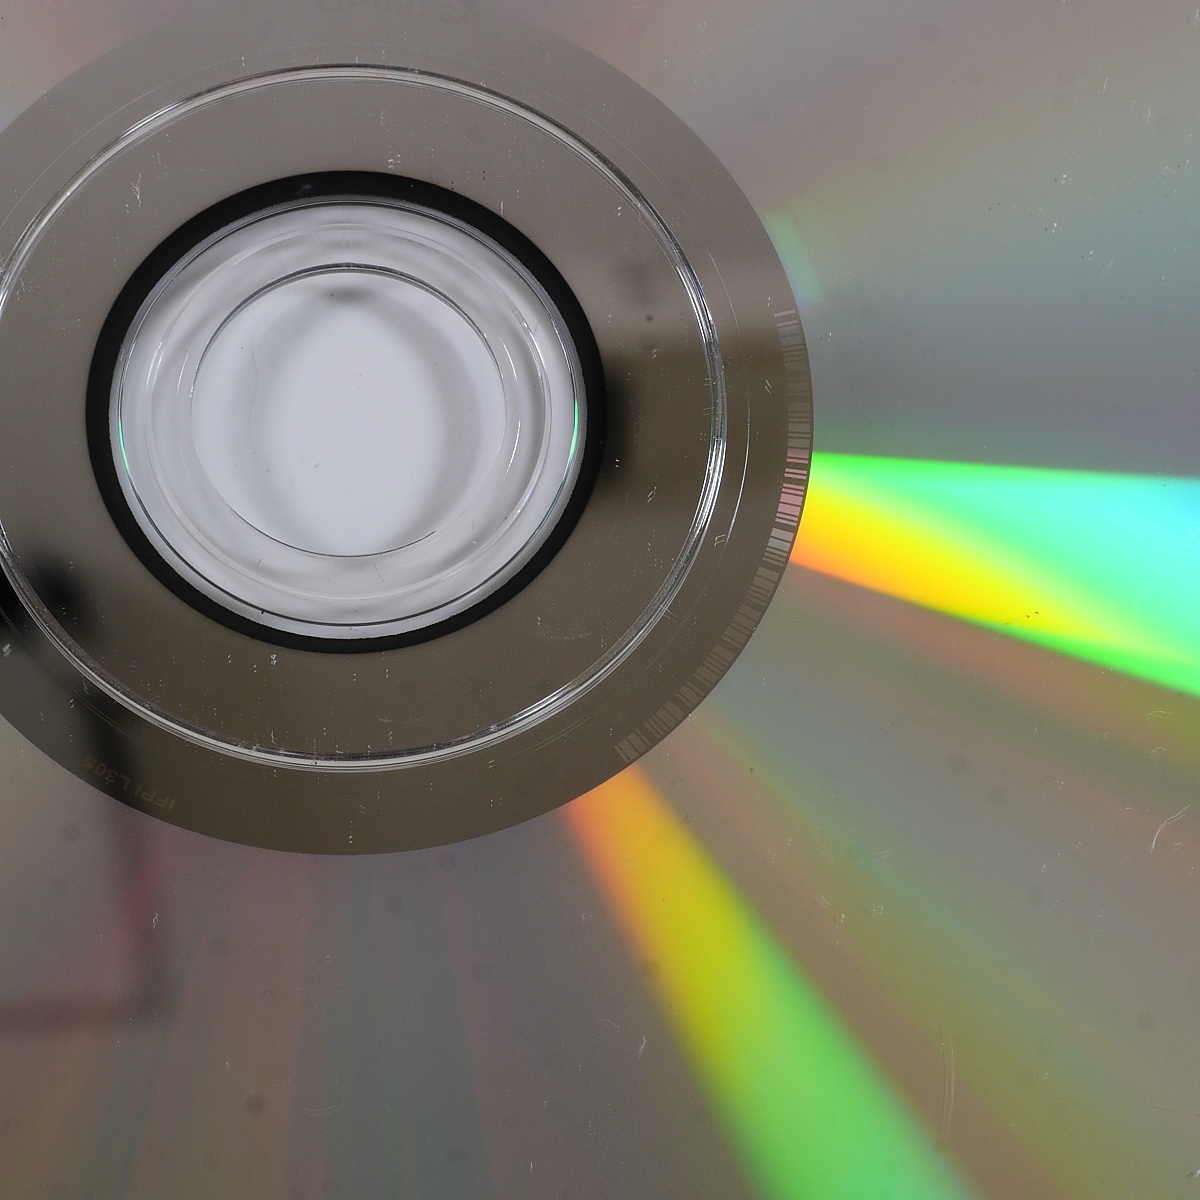 SEGA Lindberg Power Smash 3 диск только (DVP-0005B) 1 листов комплект 